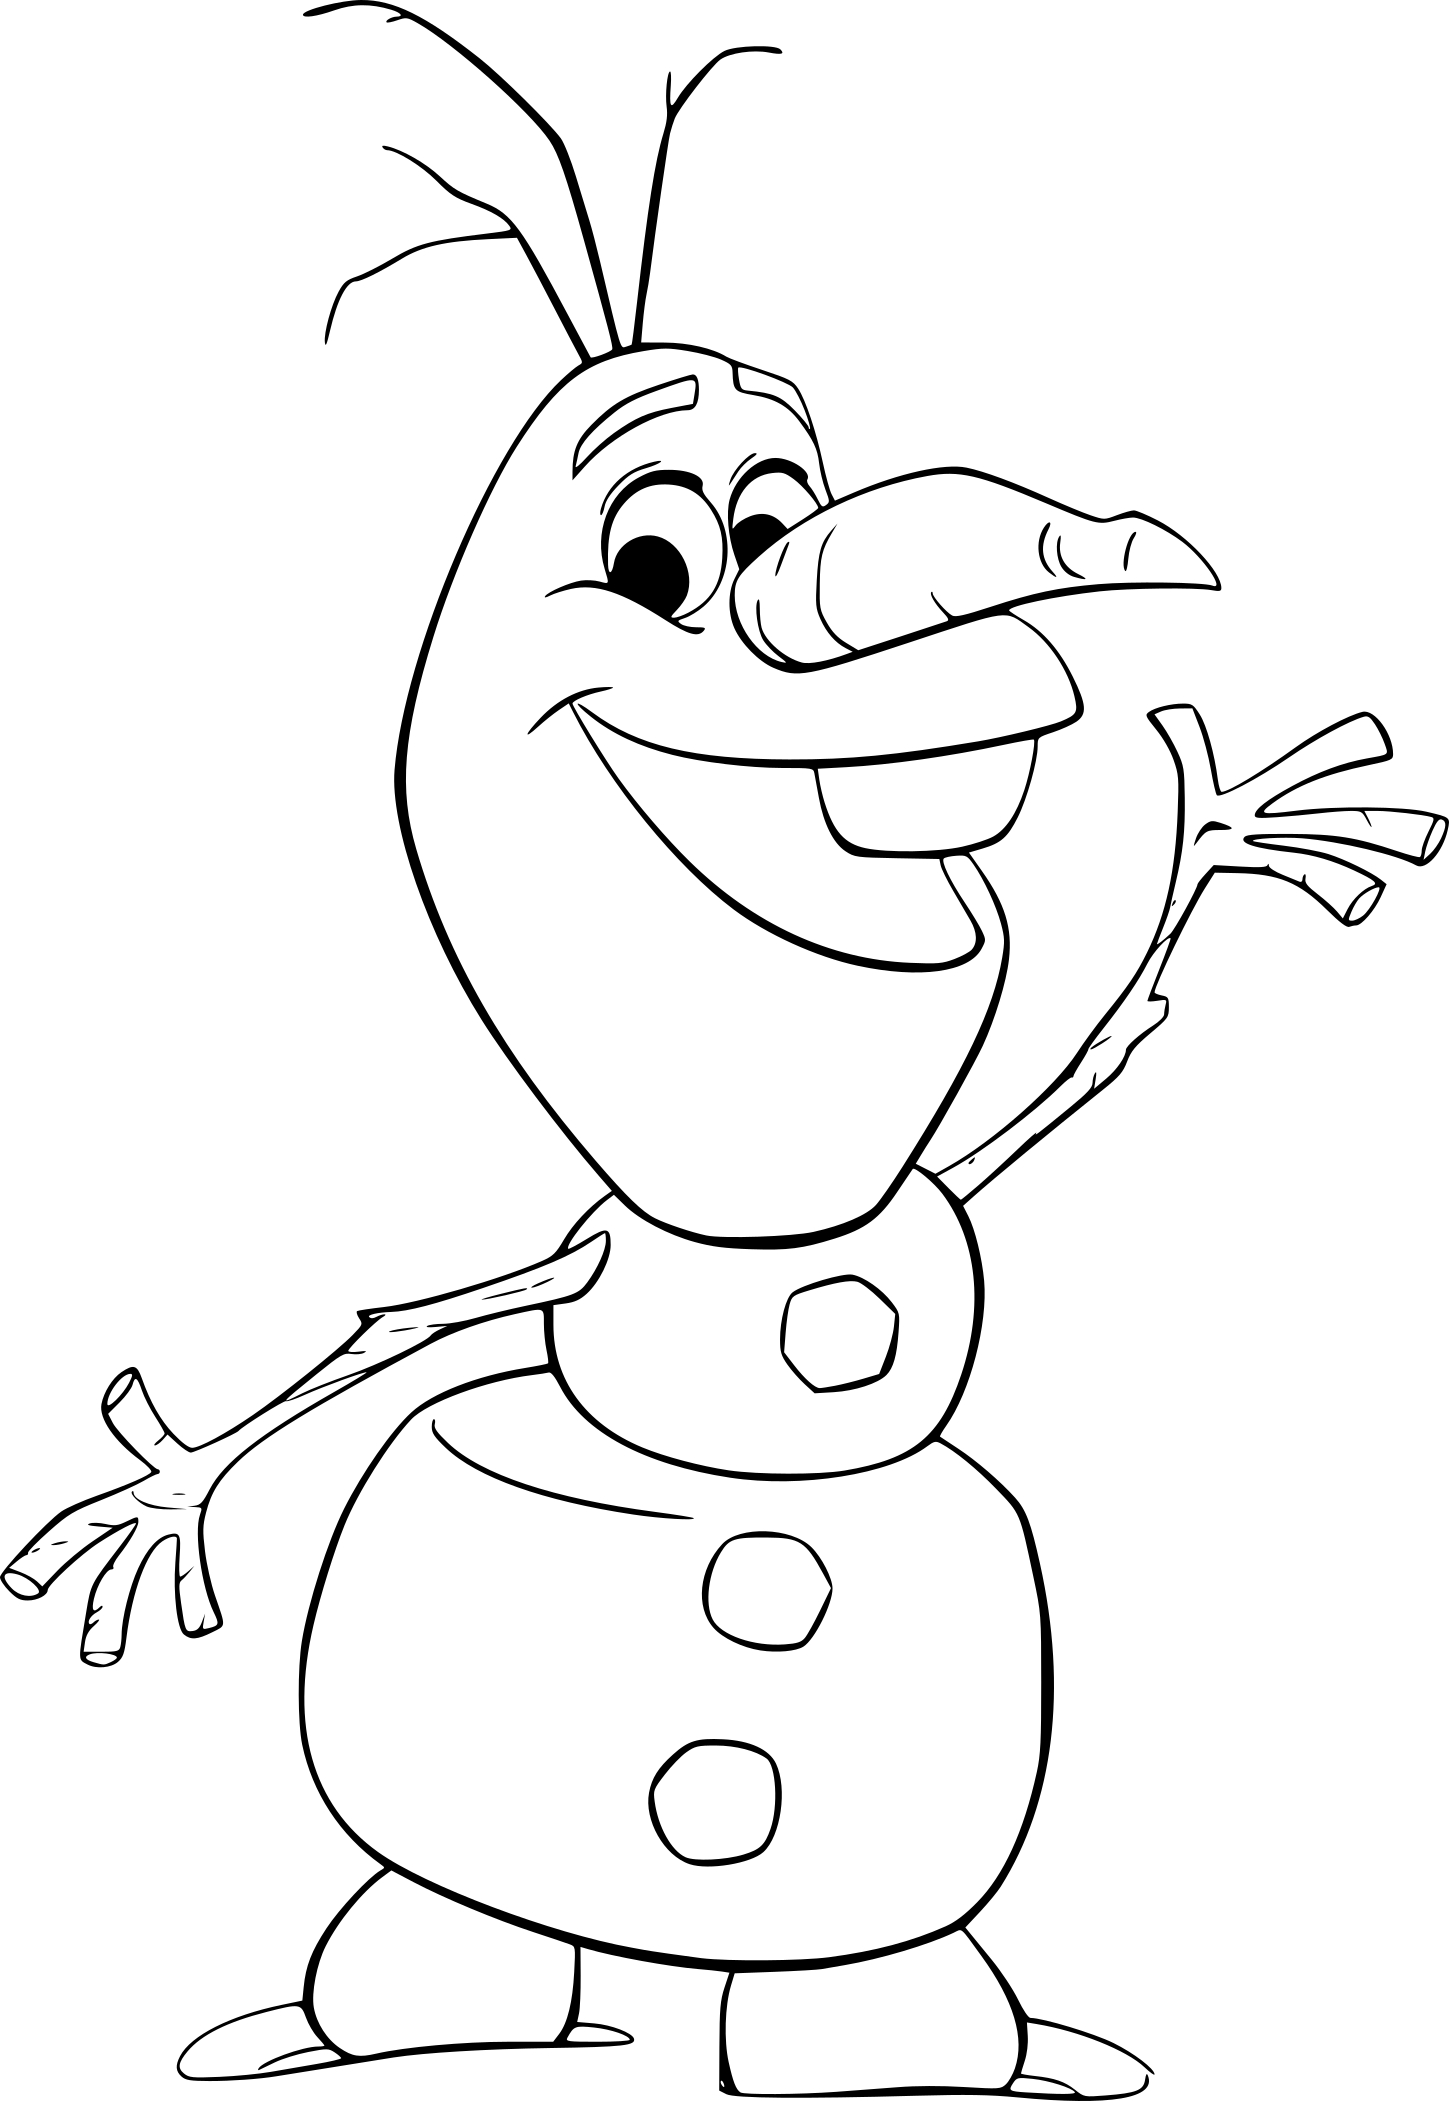 Disegno di Olaf da colorare